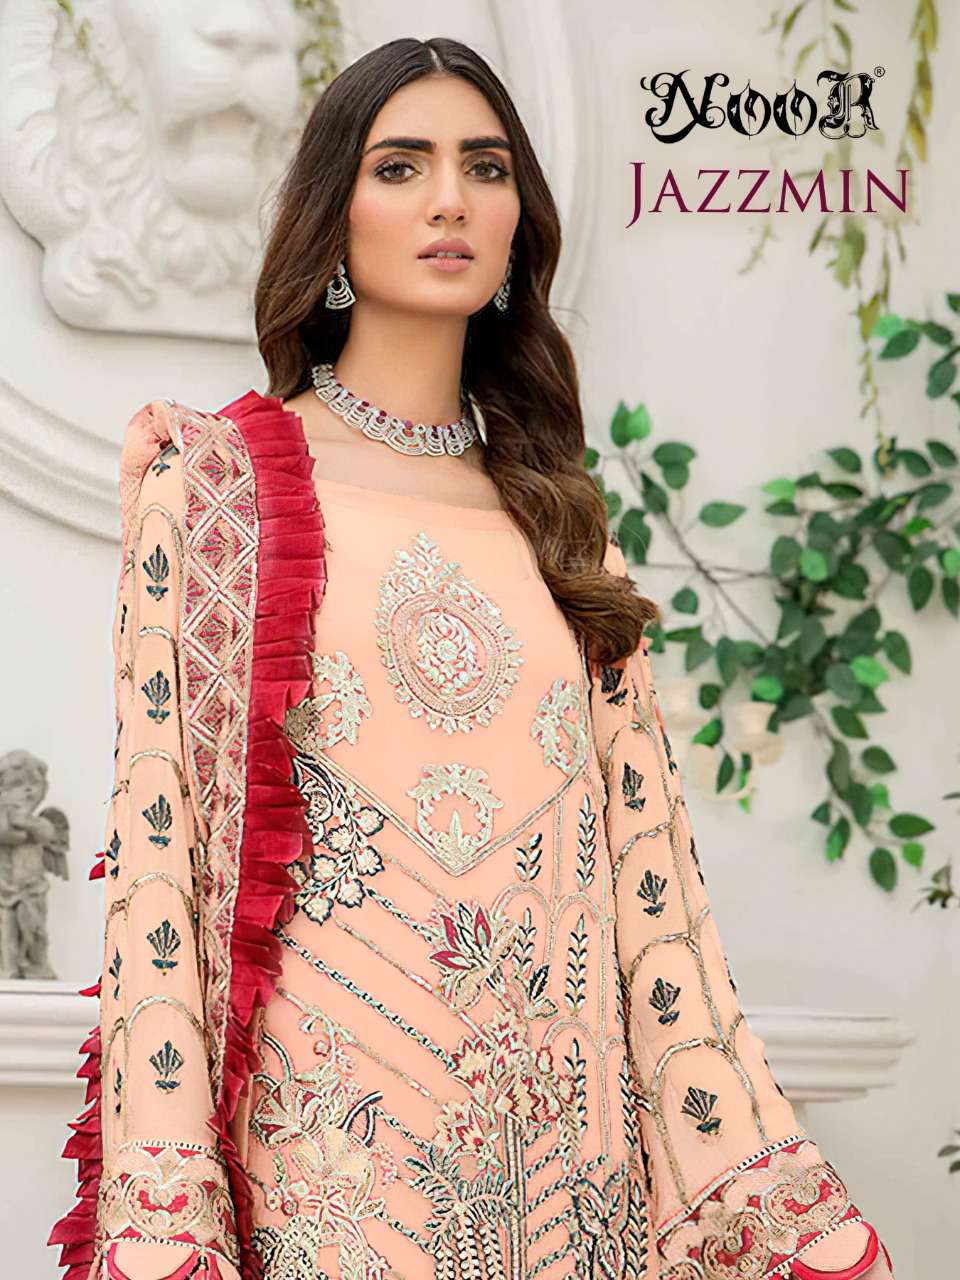 noor jazzmin pakistani embroidery dresses online 